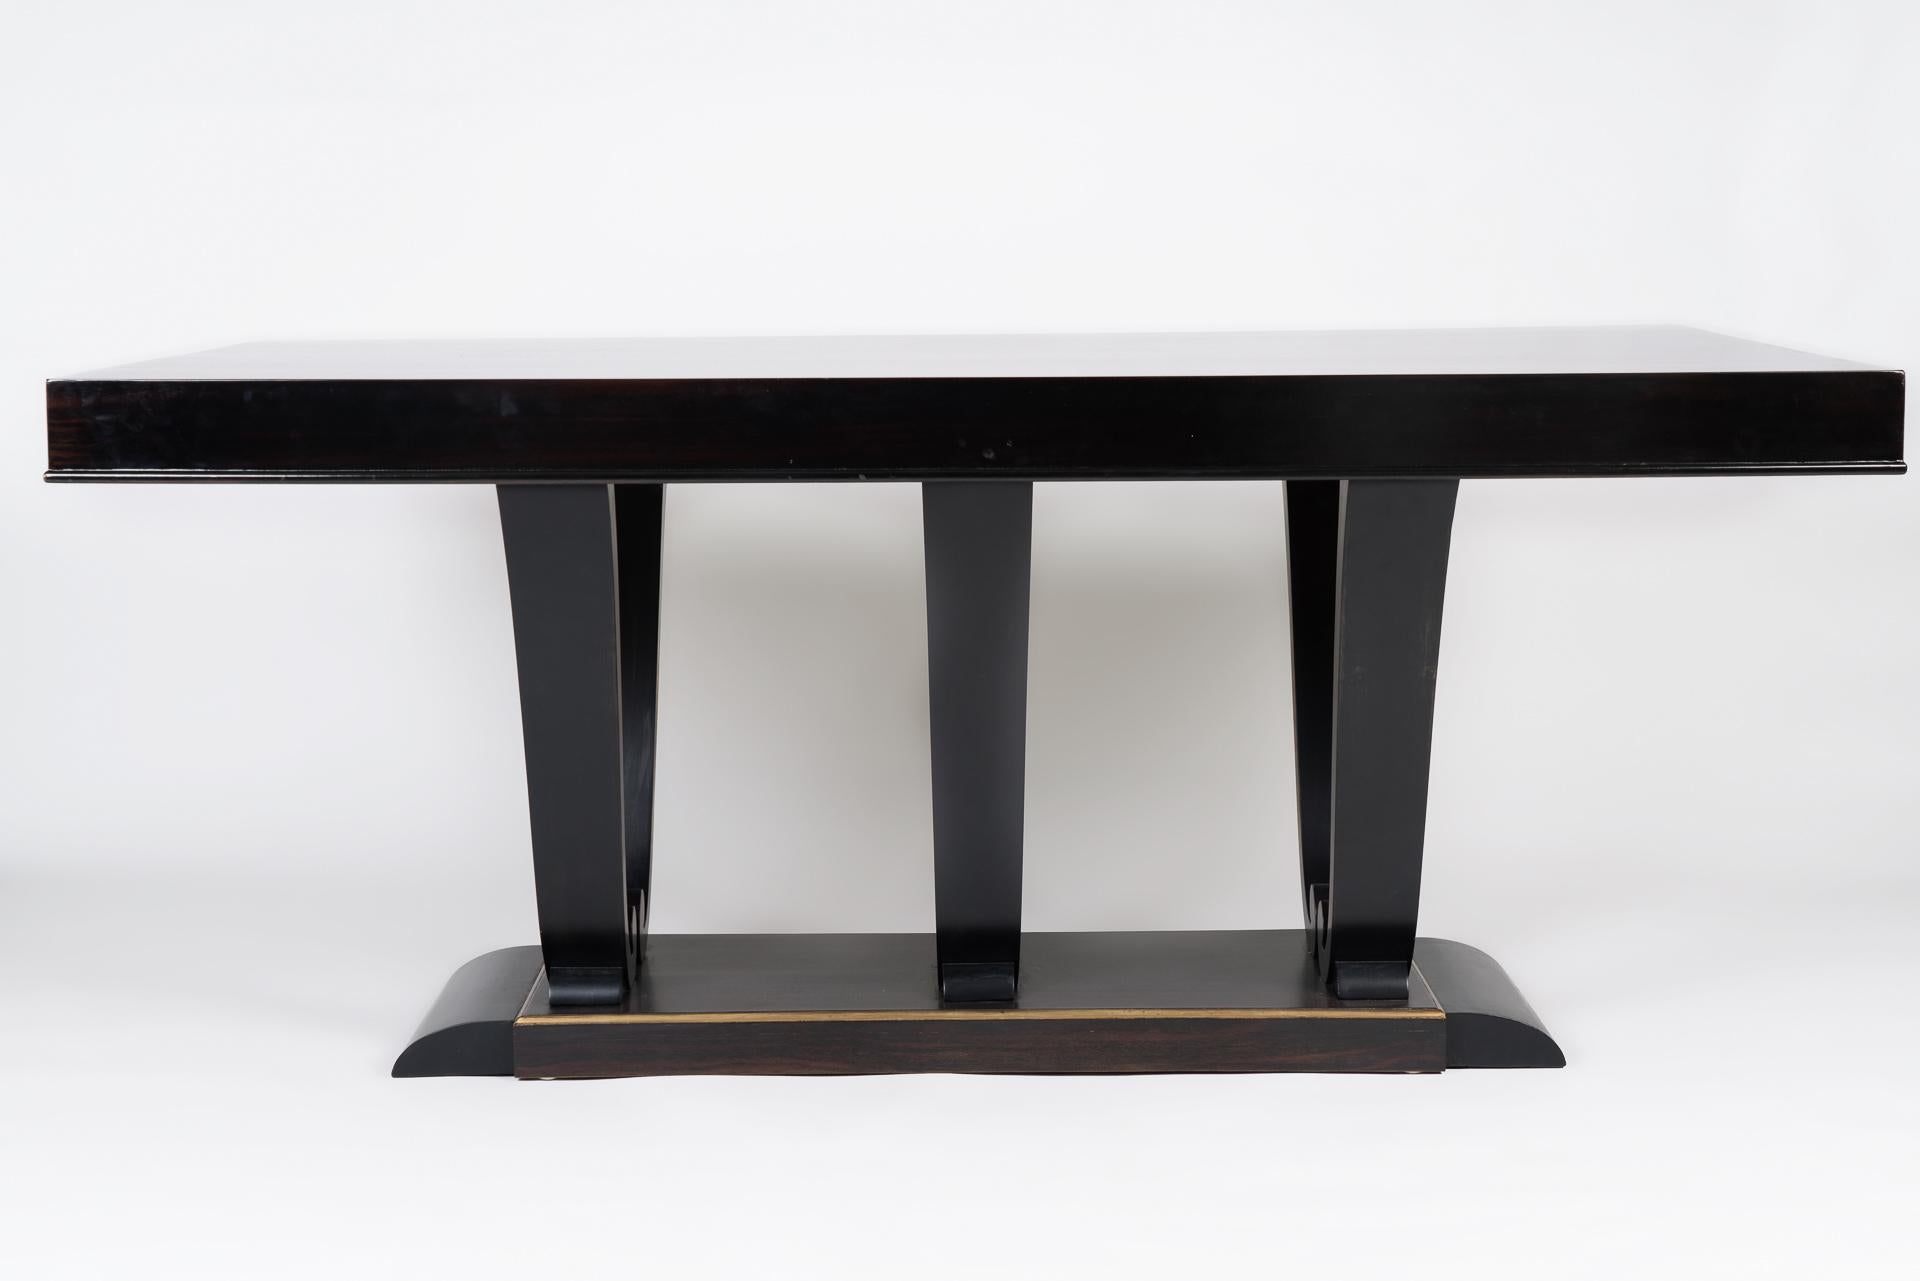 Cette table à manger s'inspire des designs Art déco de Jacques-Emile Ruhlmann. Il combine l'utilisation de bois d'acajou avec des détails en or. La forme et les proportions élégantes de la table, ainsi que l'excellence de l'artisanat, en font une